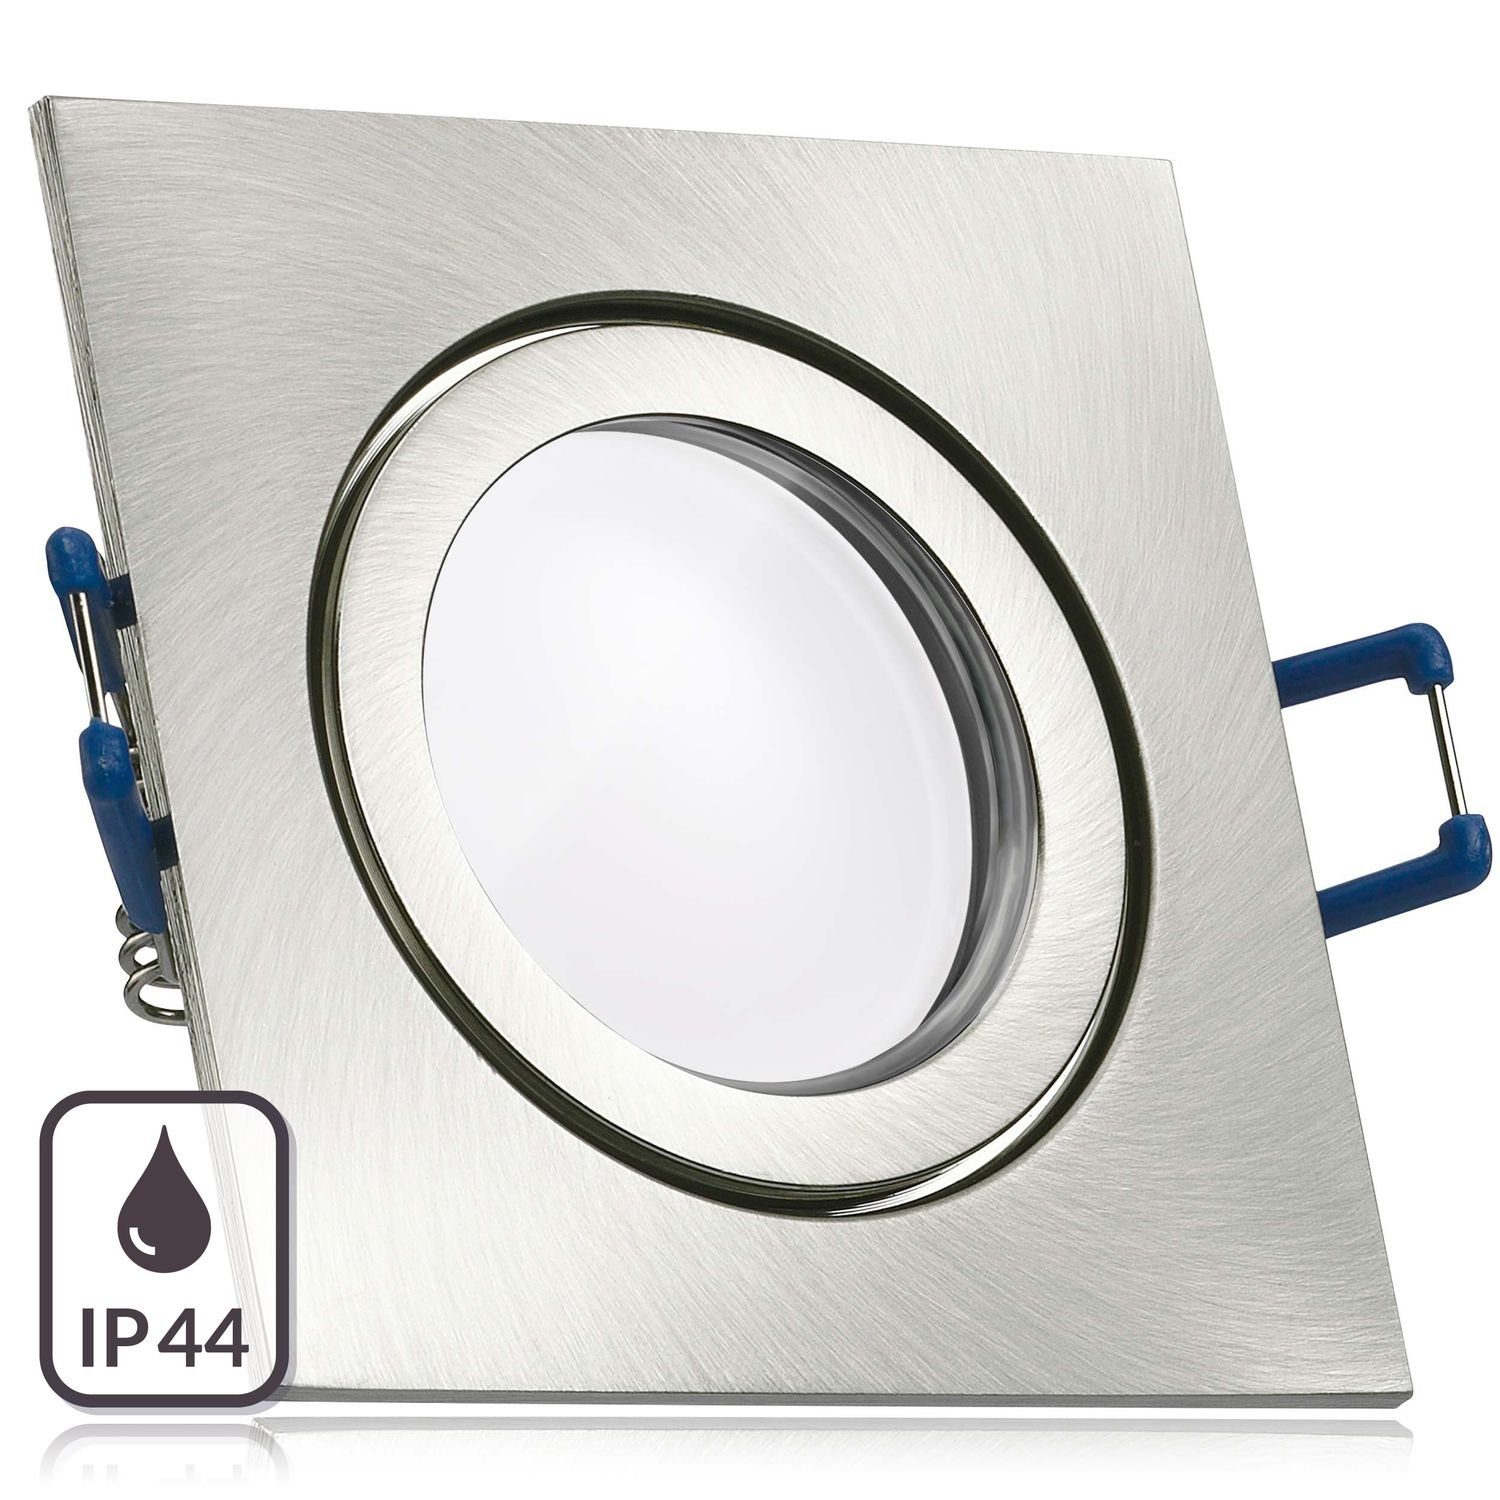 LEDANDO LED Einbaustrahler IP44 LED Einbaustrahler Set extra flach in edelstahl / silber gebürste